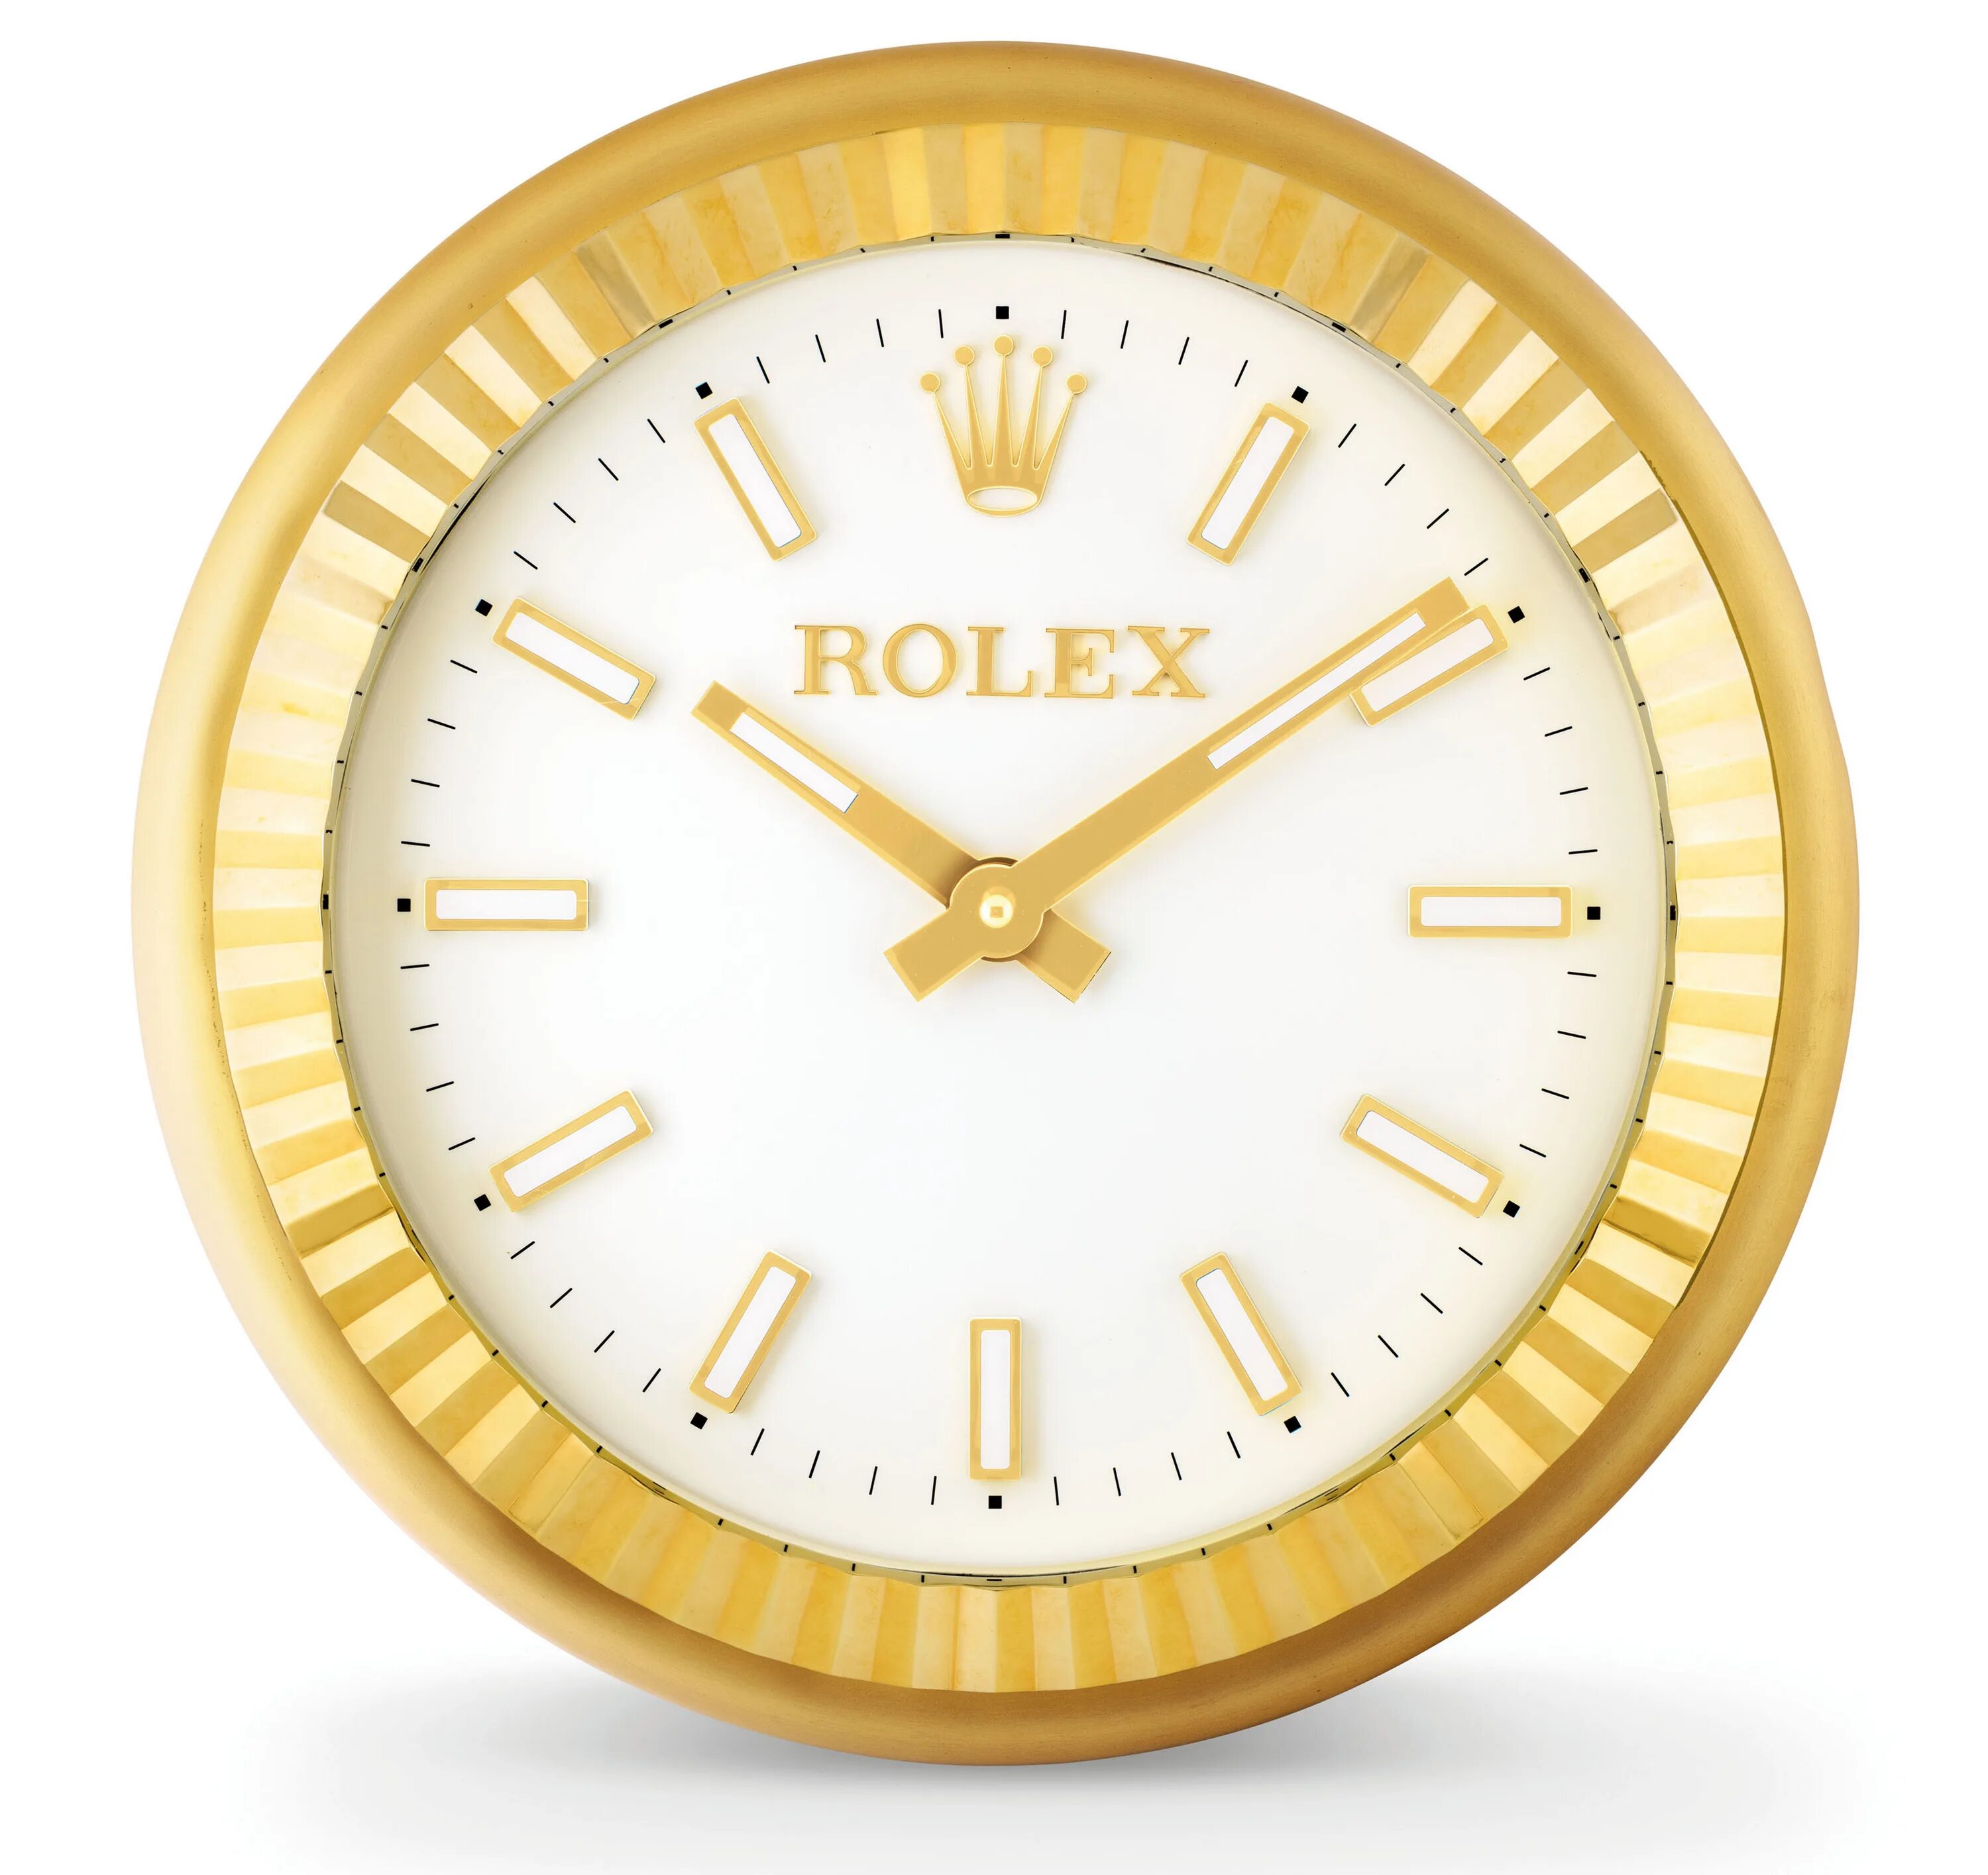 Rolex Wall Clock. Ролексы настенные часы. Настенные часы Rolex. Настольные часы Rolex.